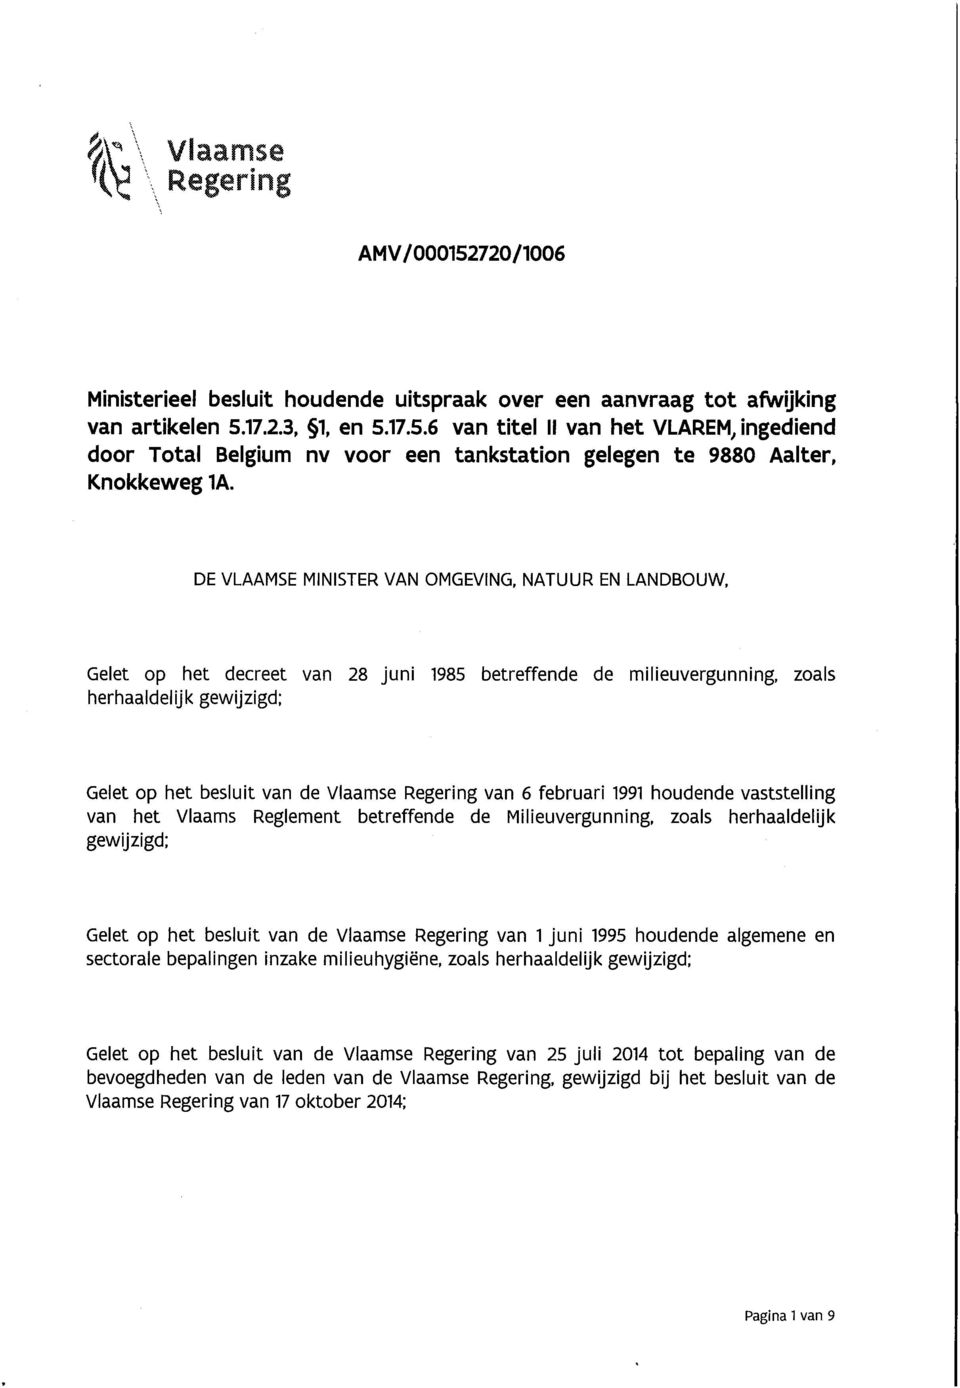 NATUUR EN LANDBOUW, Gelet op het decreet van 28 juni 1985 betreffende de milieuvergunning, zoals herhaaldelijk gewijzigd; Gelet op het besluit van de Vlaamse Regering van 6 februari 1991 houdende